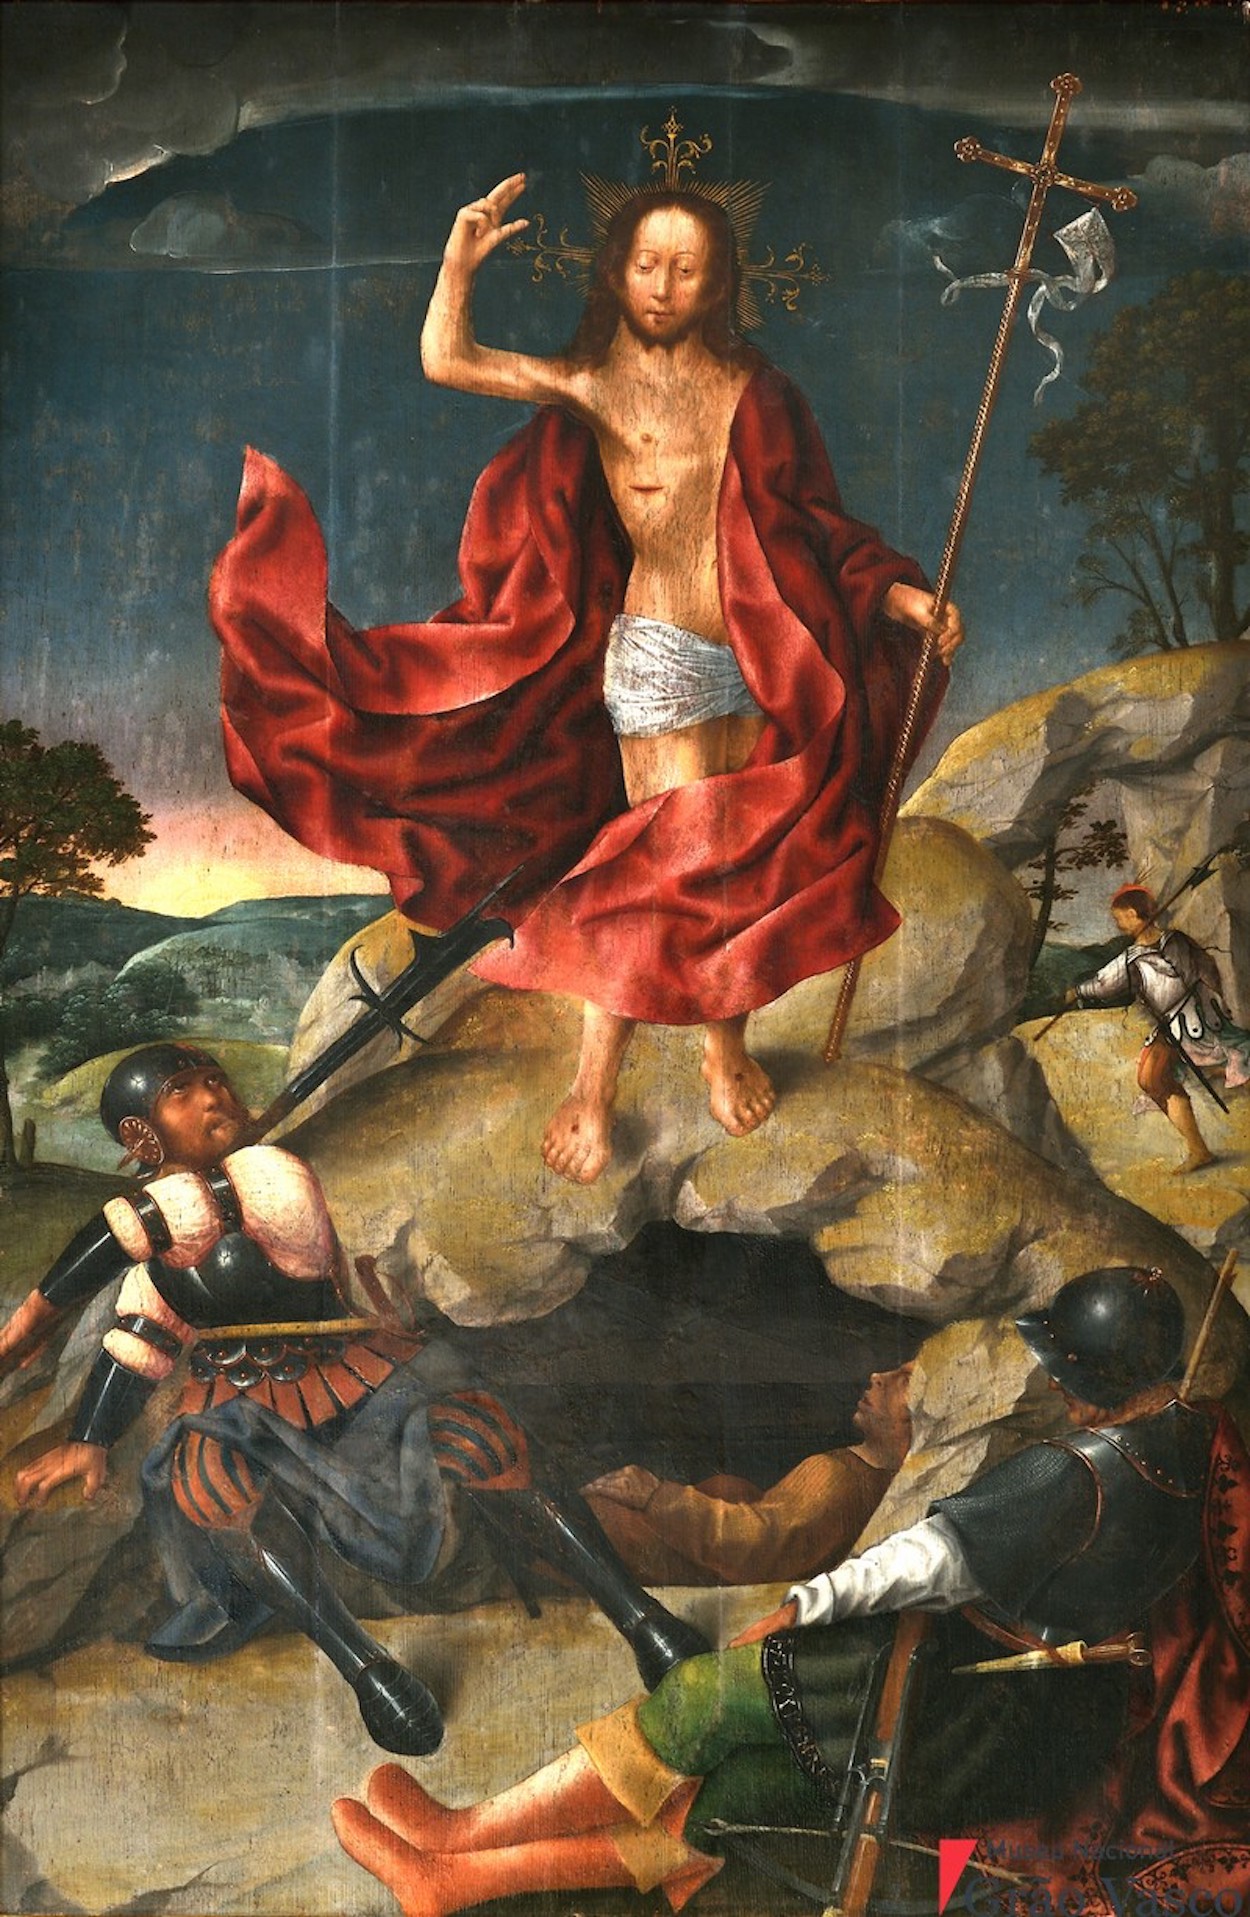 Vzkříšení by Grão Vasco - 1501-1506 - 132 cm x 82 cm 